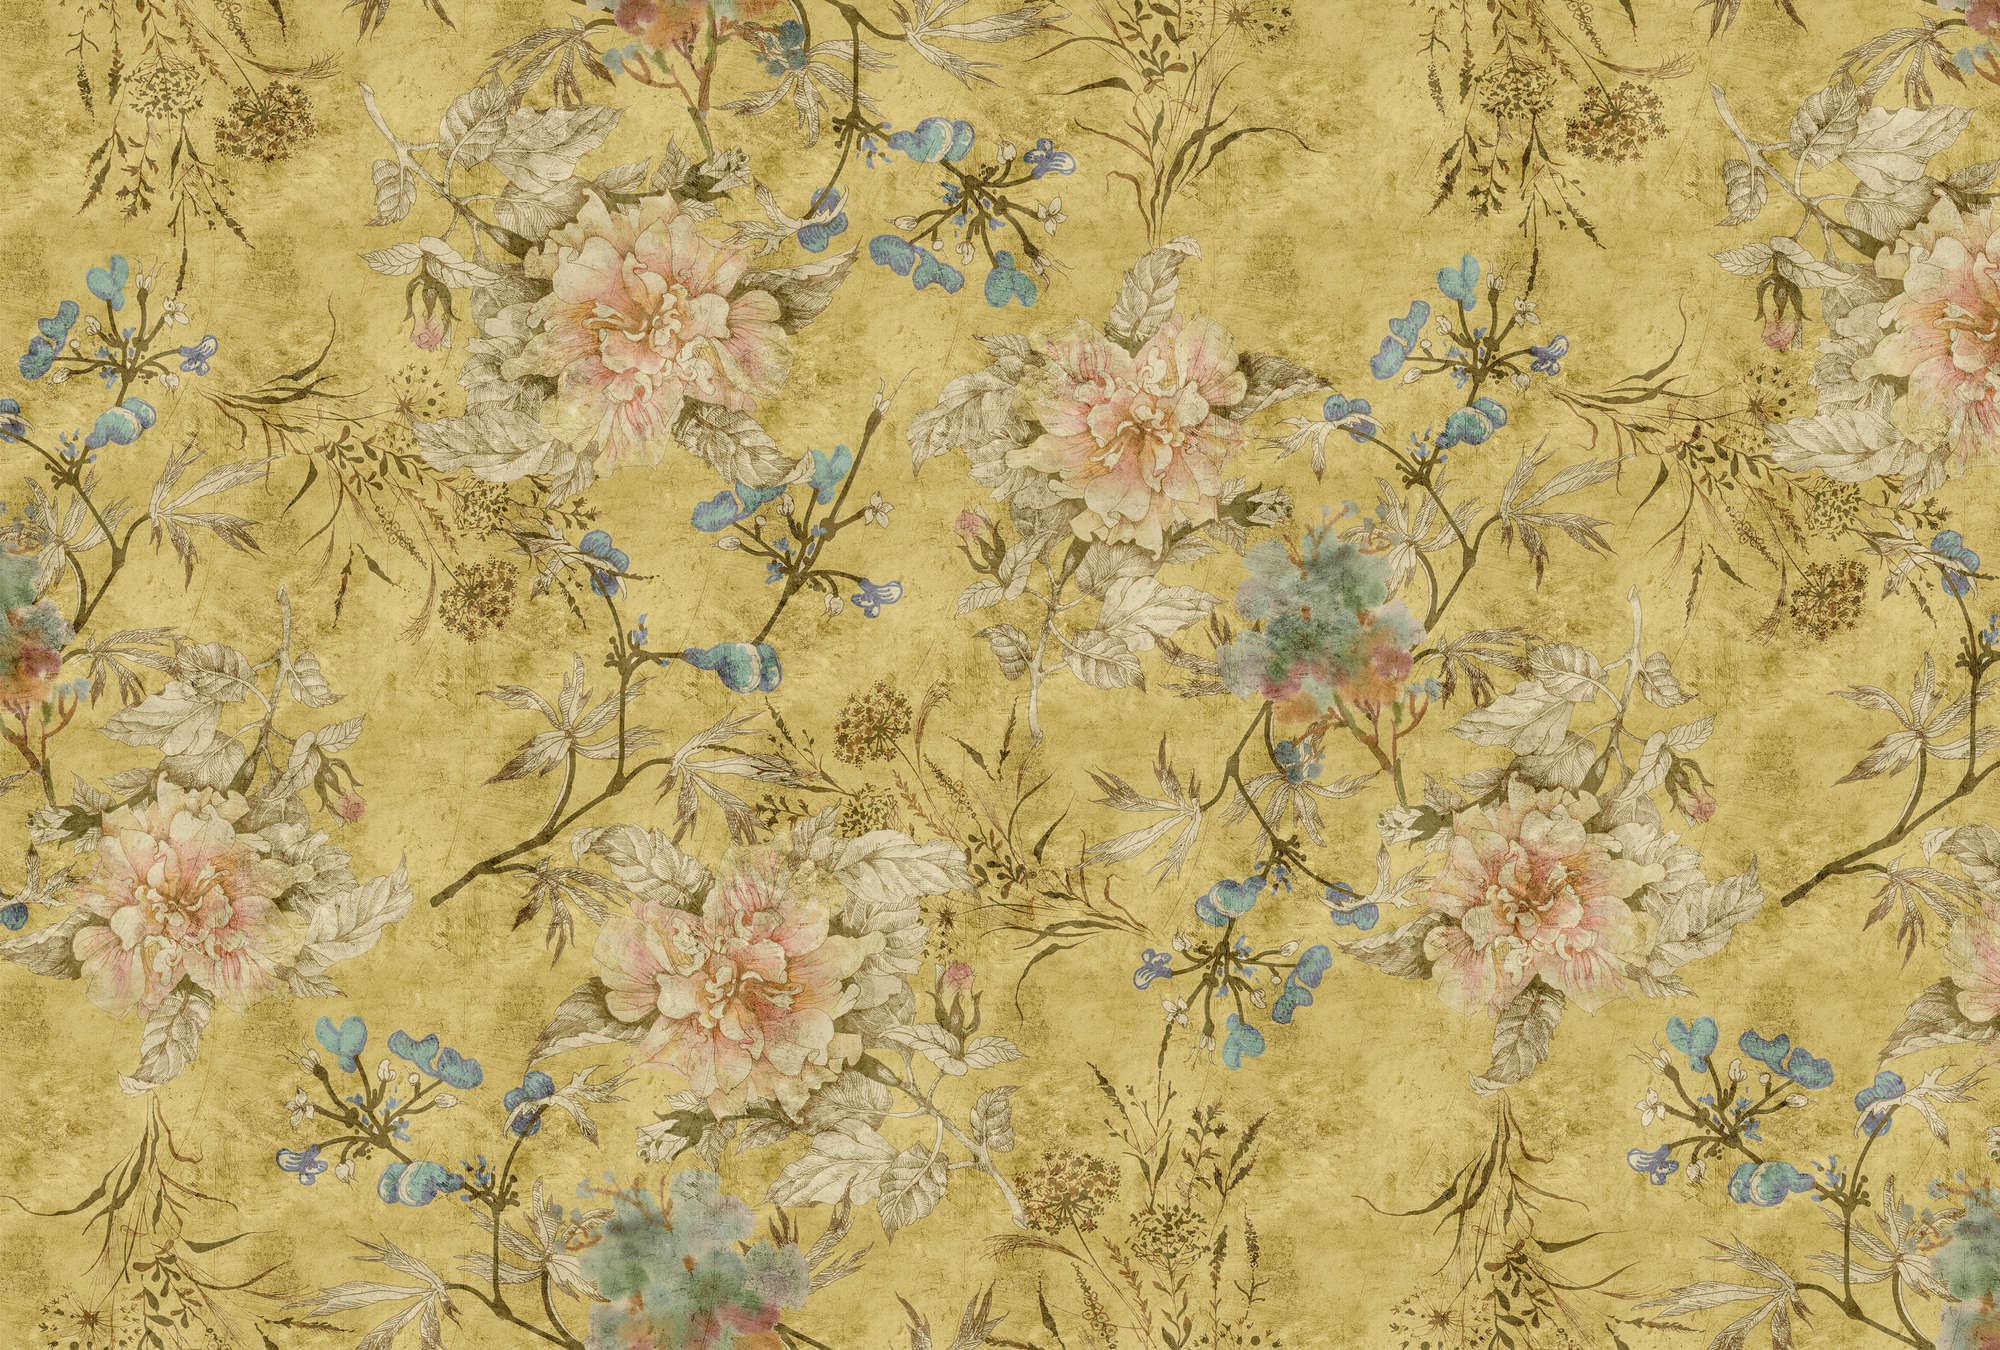             Tenderblossom 2 - Vintage Look Floral Wallpaper- Kras textuur - Geel | Pearl Smooth Vliesbehang
        